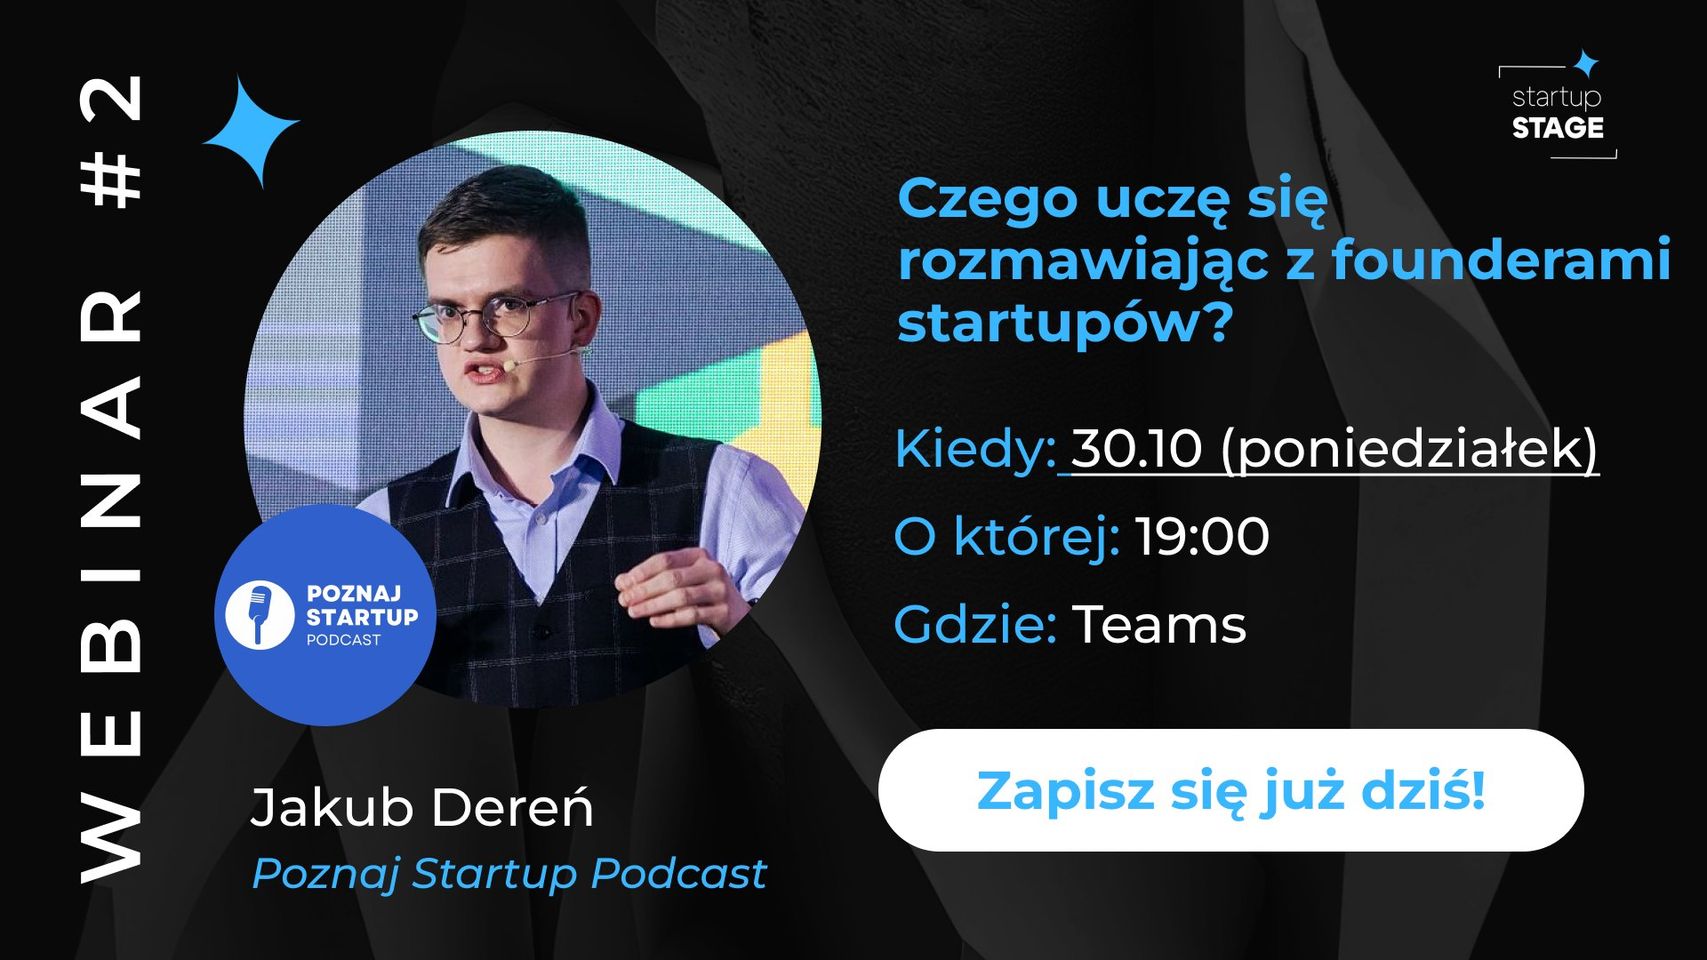 webinar-2-czego-ucze-sie-rozmawiajac-z-founderami-startupow-startup-stage-x-jakub-deren